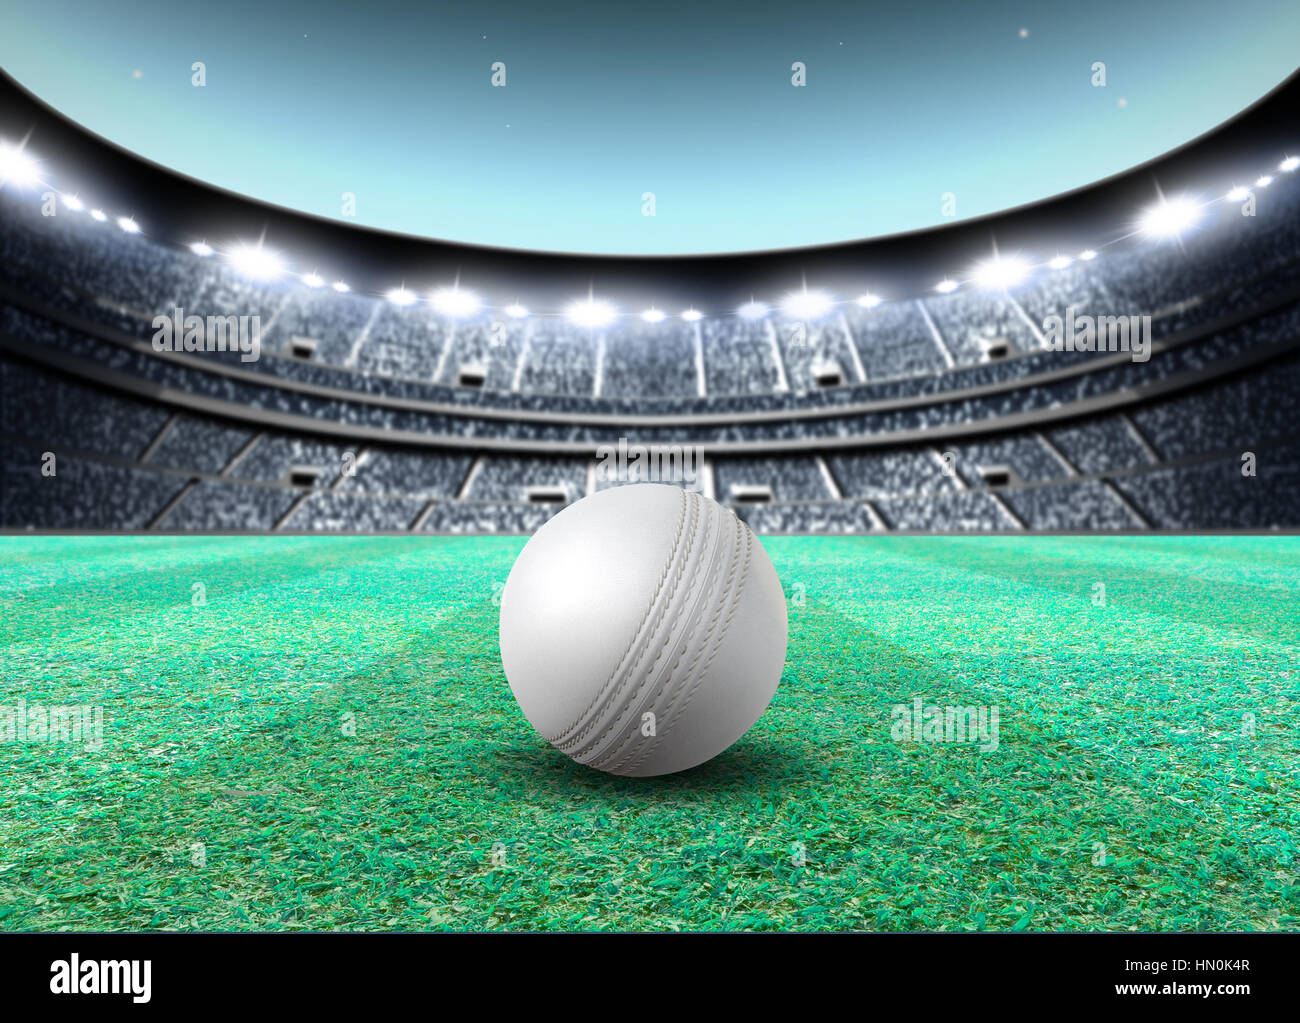 Eine generische sitzenden Cricket-Stadion mit einem weißen Ball auf einem grünen Rasen nachts beleuchteten Flutlicht - 3D render Stockfoto